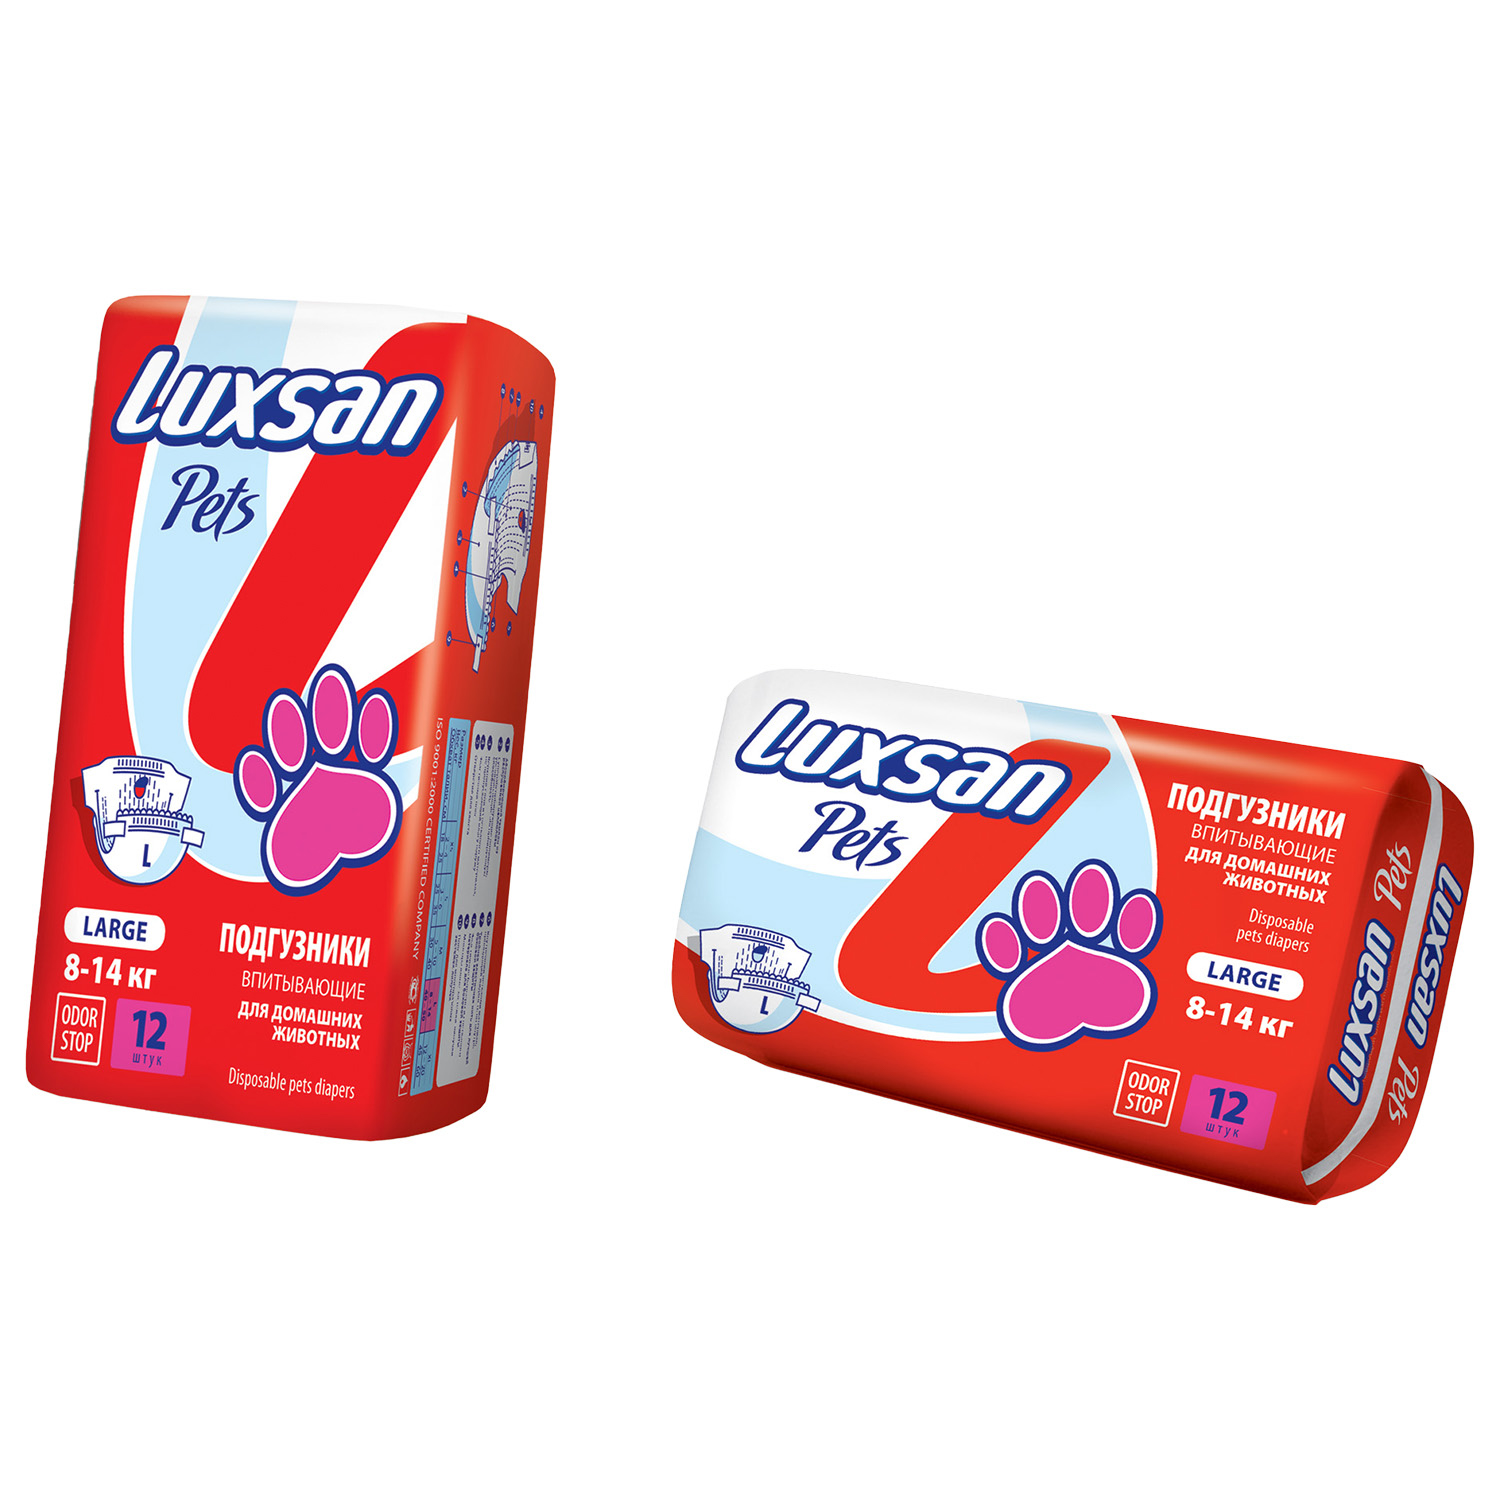 Подгузники Luxsan Pets L 8-14 кг д/жив 12 шт